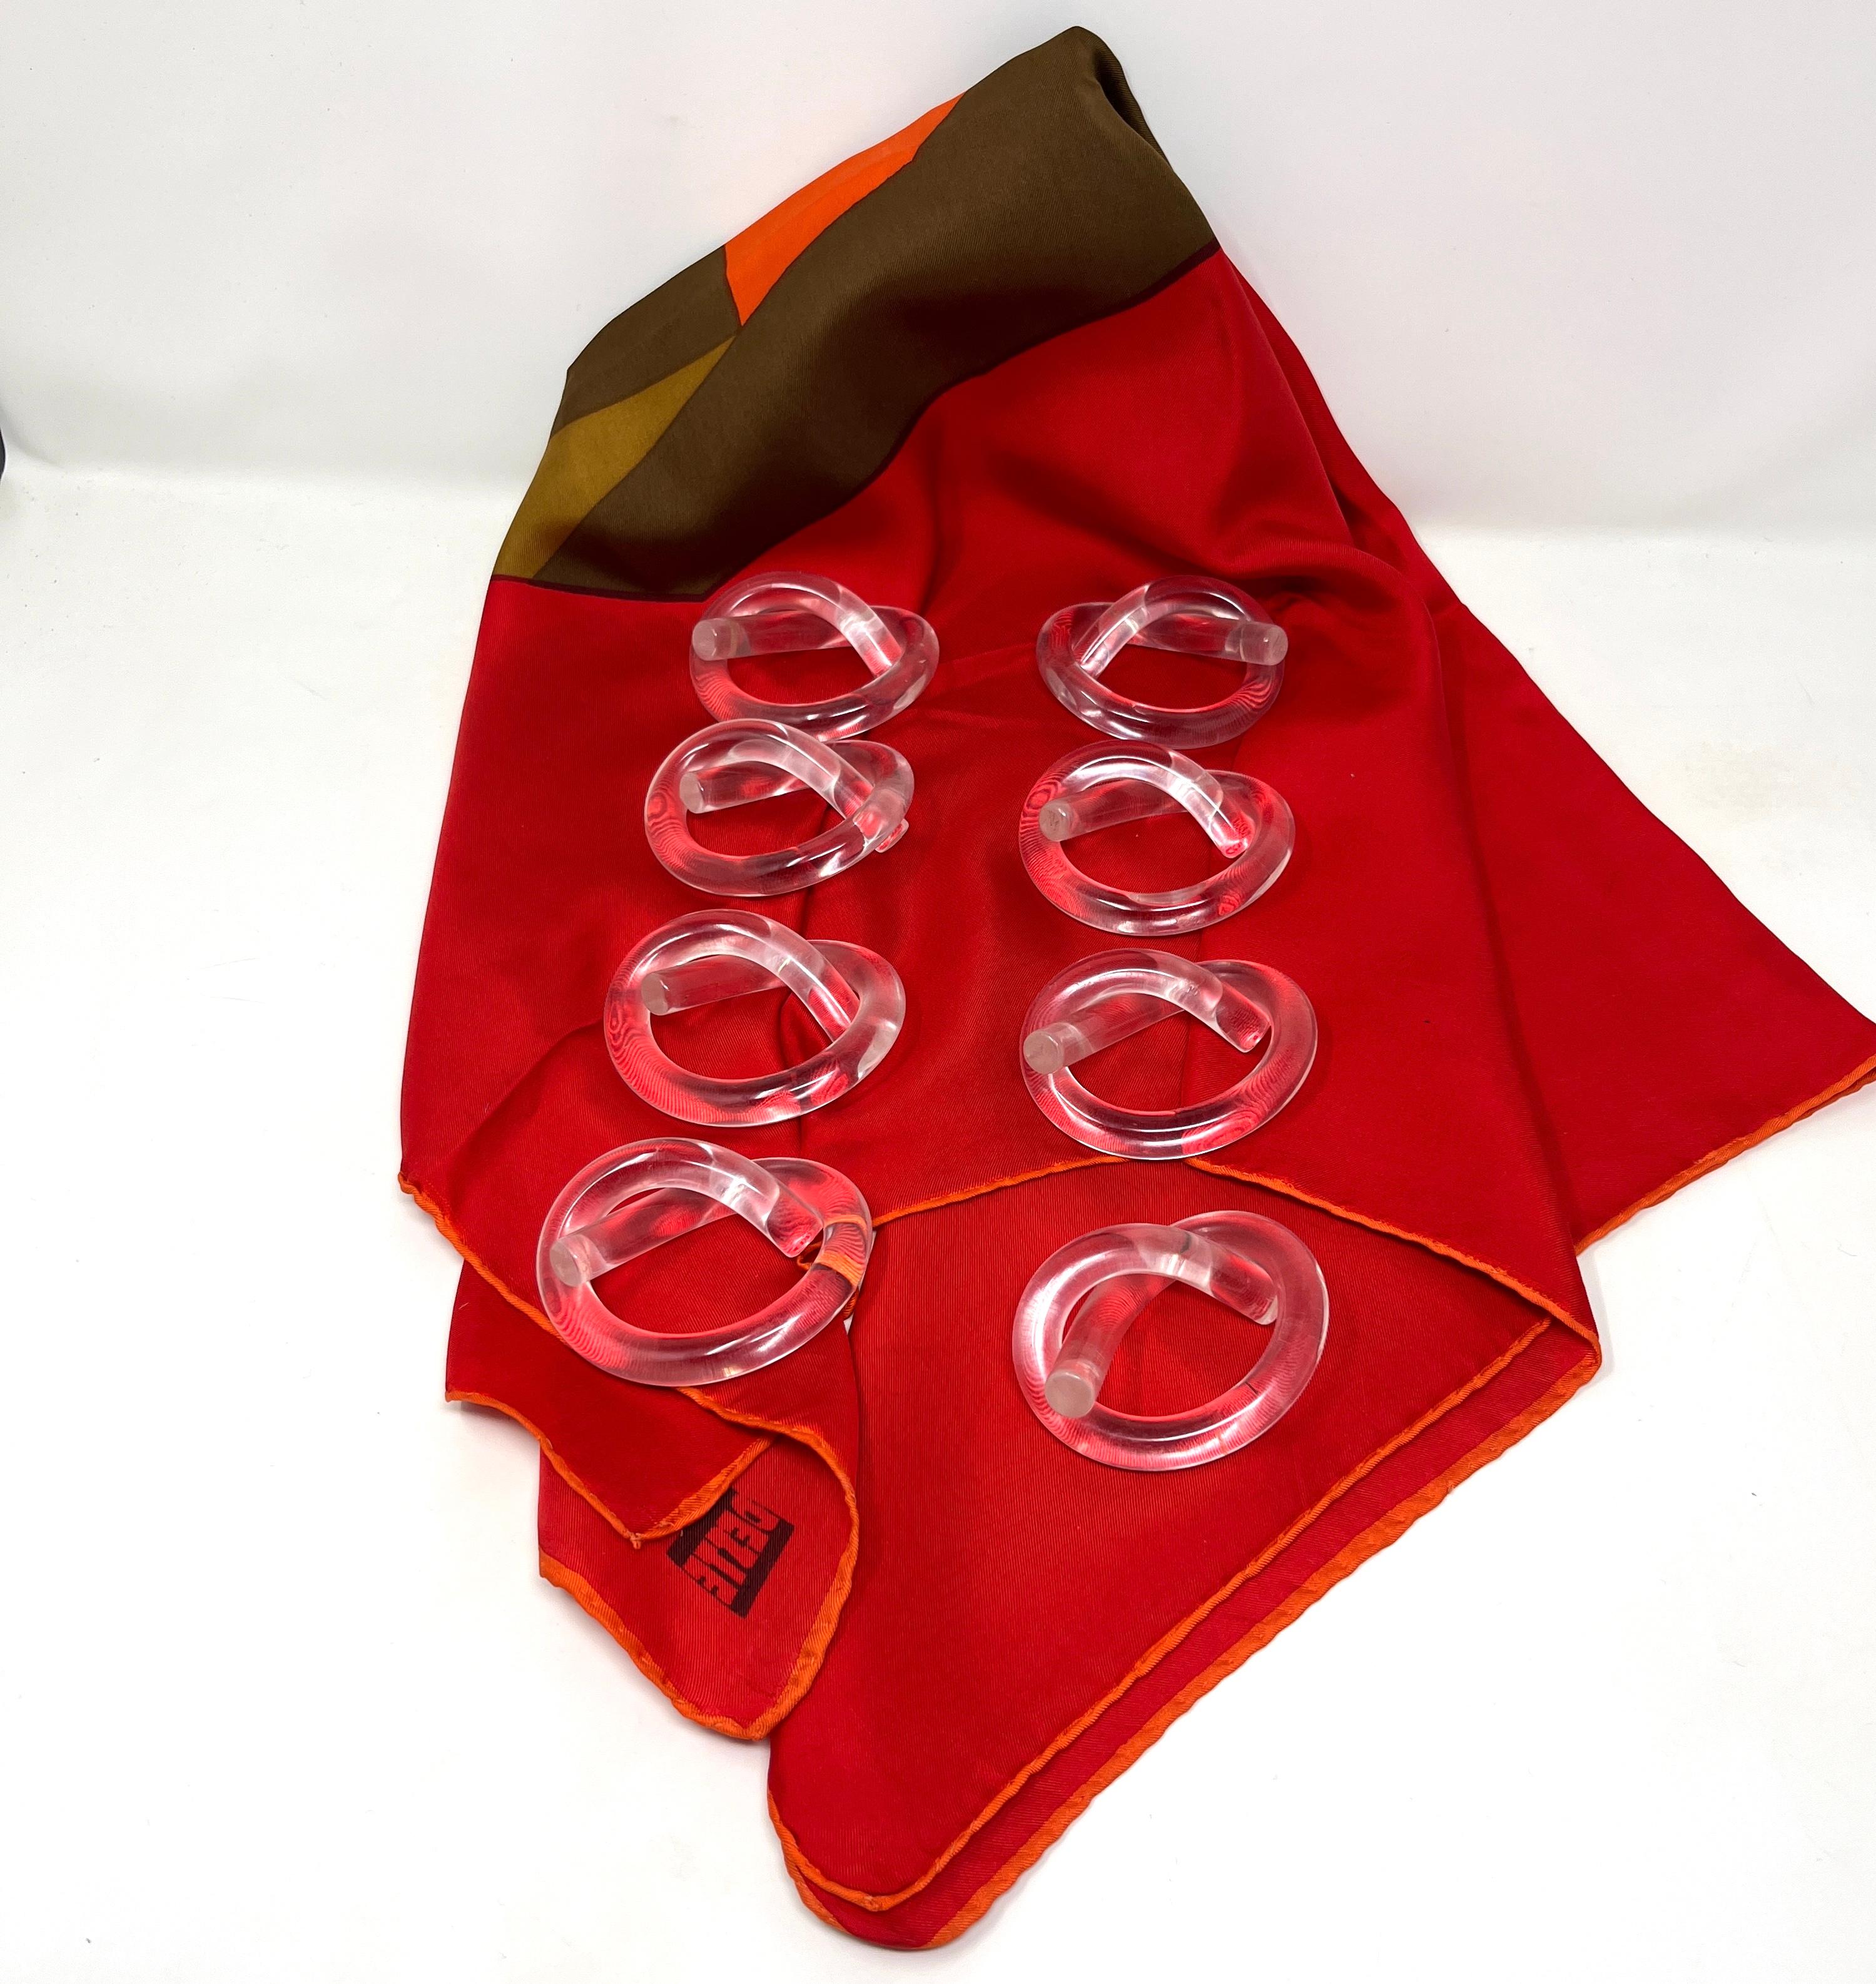 Ensemble de 8 ronds de serviette en Lucite en forme de bretzel, conçus par Dorothy Thorpe et datant du milieu du siècle dernier. Des tubes simples de Lucite solide sont enveloppés dans une forme de bretzel comme des ronds de serviette idéaux. Ils